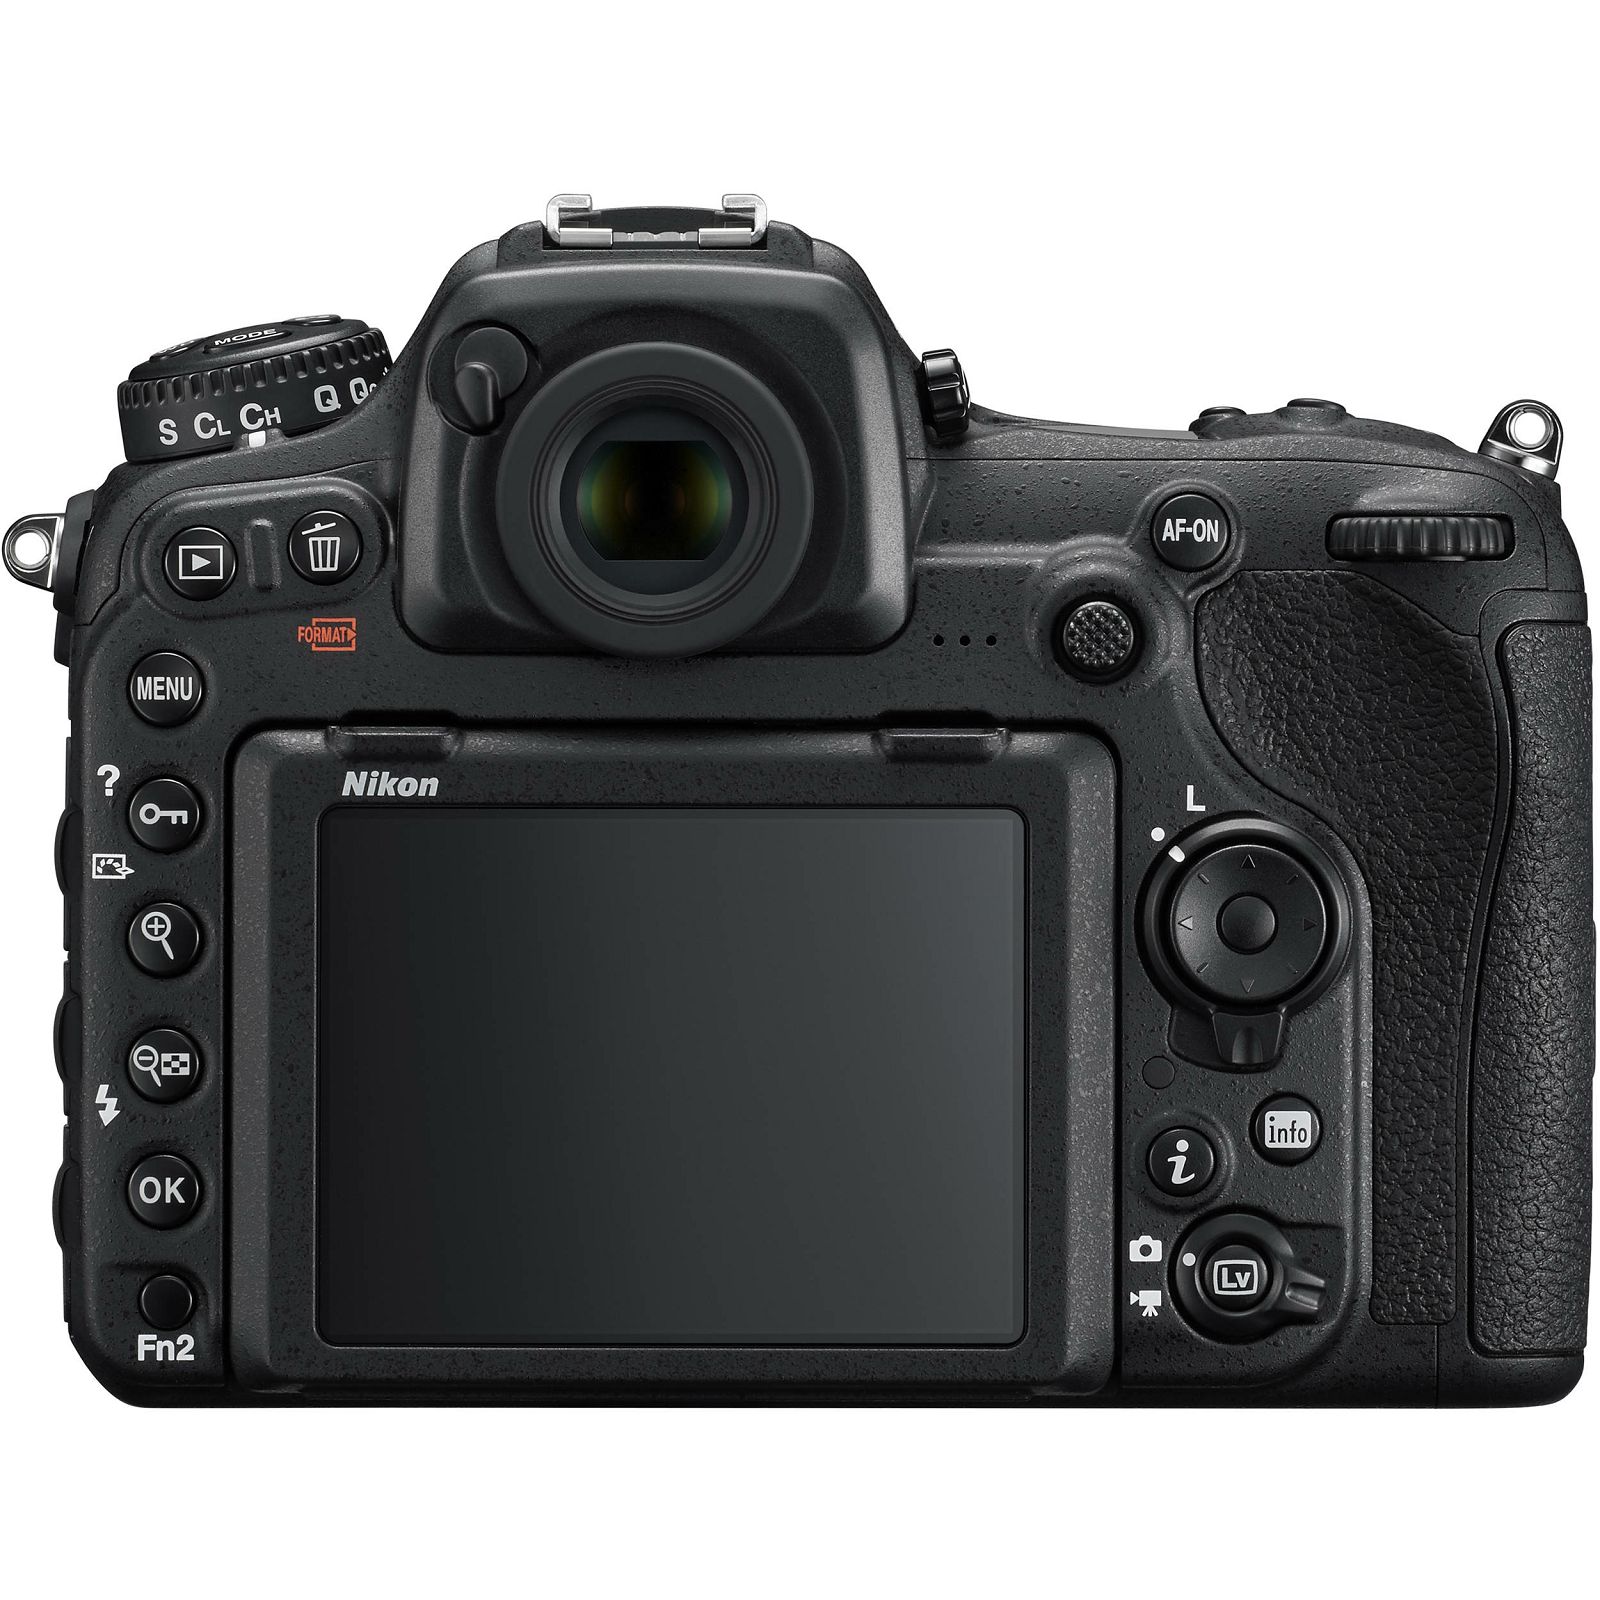 Nikon D500 + AF-S 16-80 KIT DX 4K UHD 20.9MP DSLR Camera Digitalni fotoaparat i objektiv 16-80mm 2.8-4.0 f/2.8-4E ED (VBA480K001)